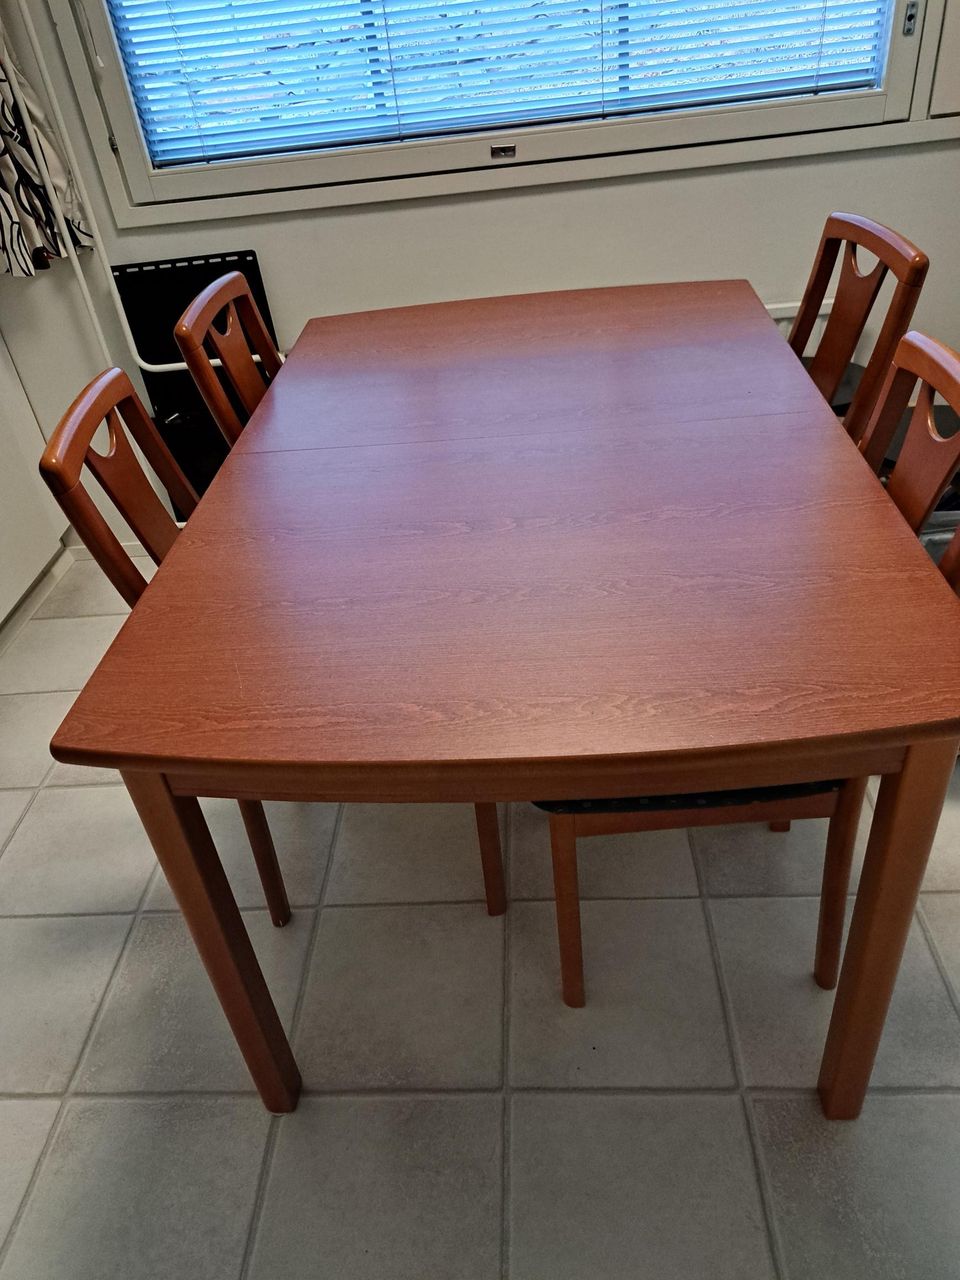 Keittiön pöytä ja 4 tuolia